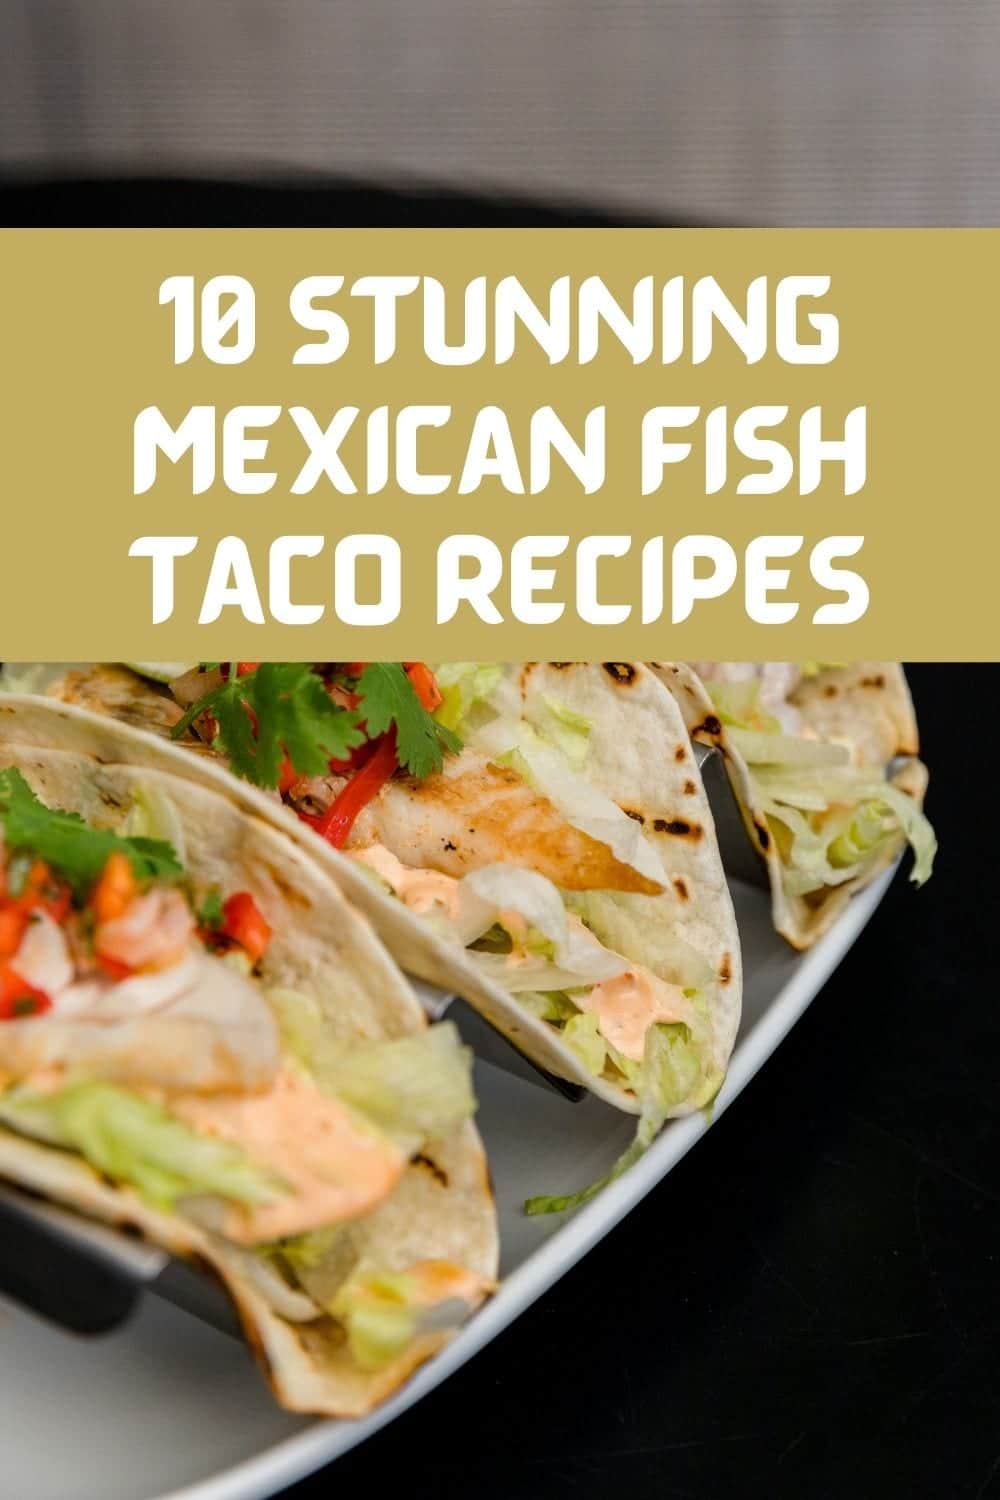 Mexican Fish Taco Recipes